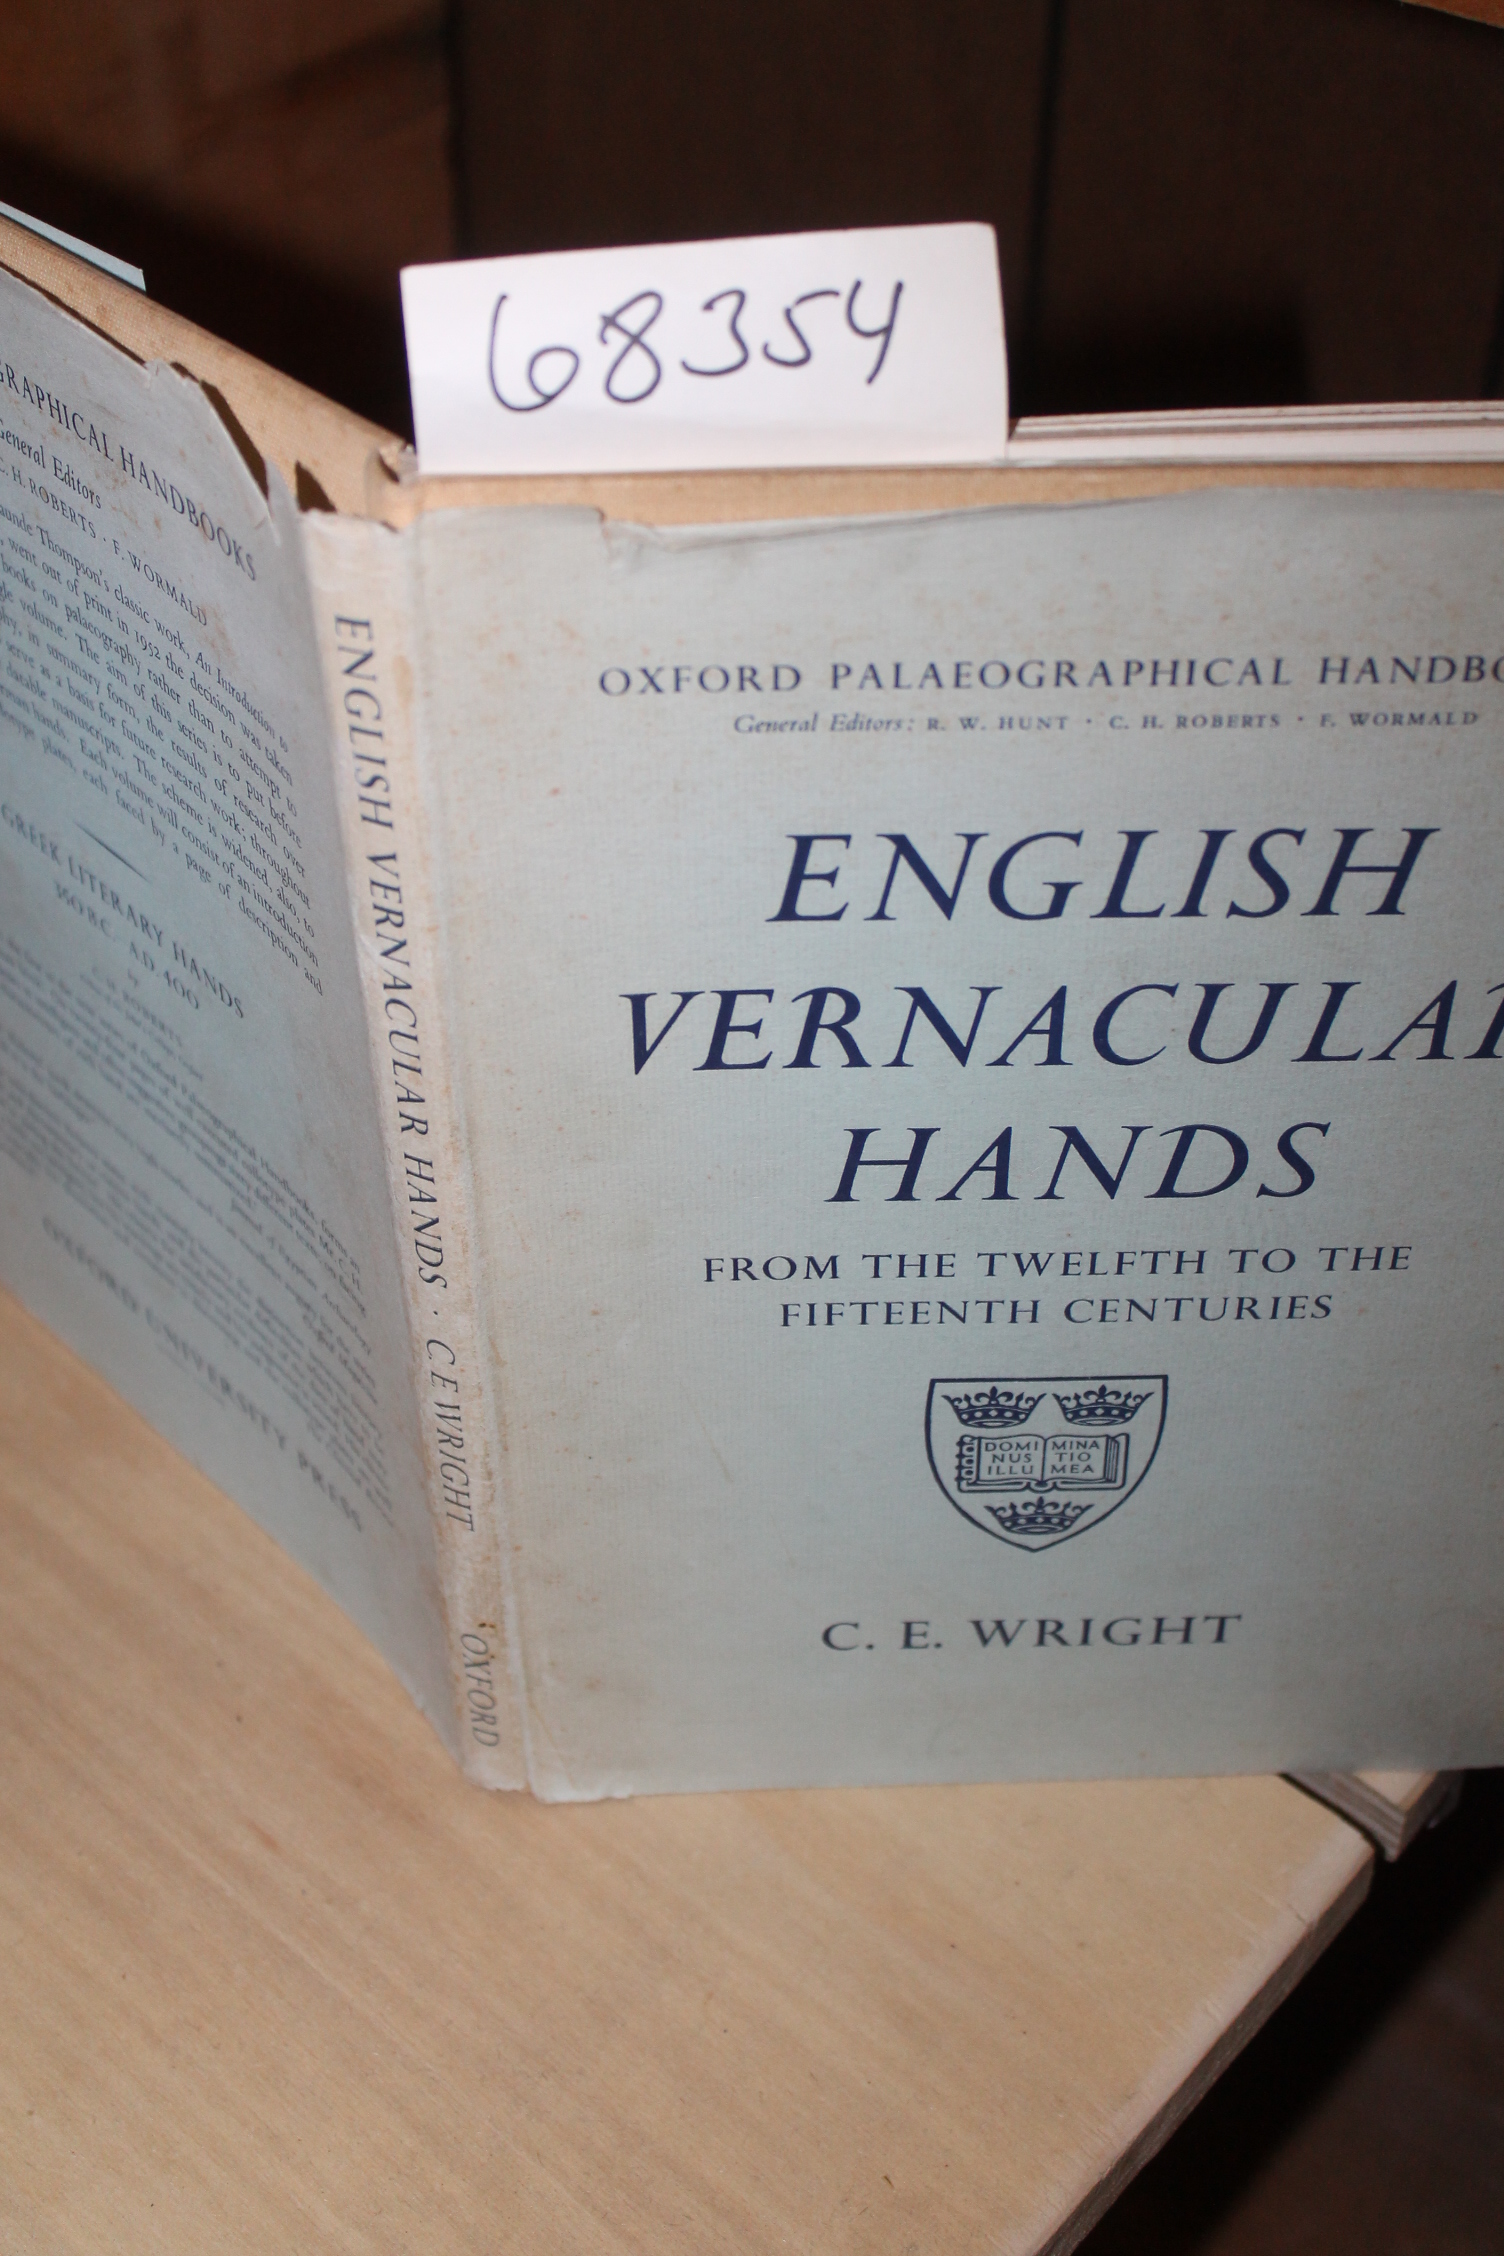 Wright, C. E.: English Vernacular Hands